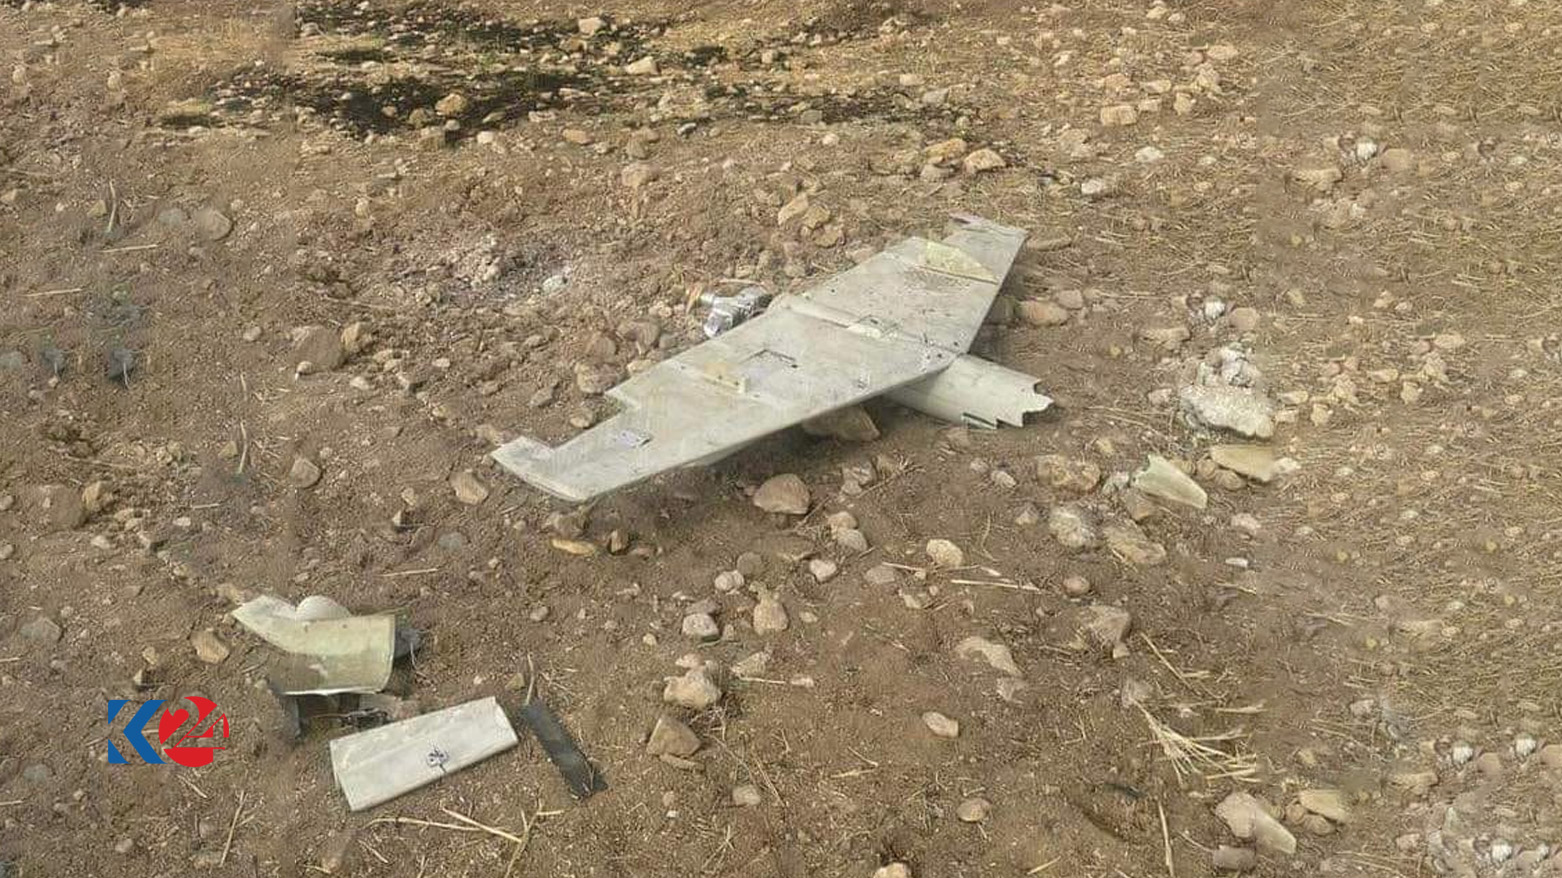 بقايا الطائرة المُسيّرة المُفخخة التي وقعت في قضاء حرير بأربيل